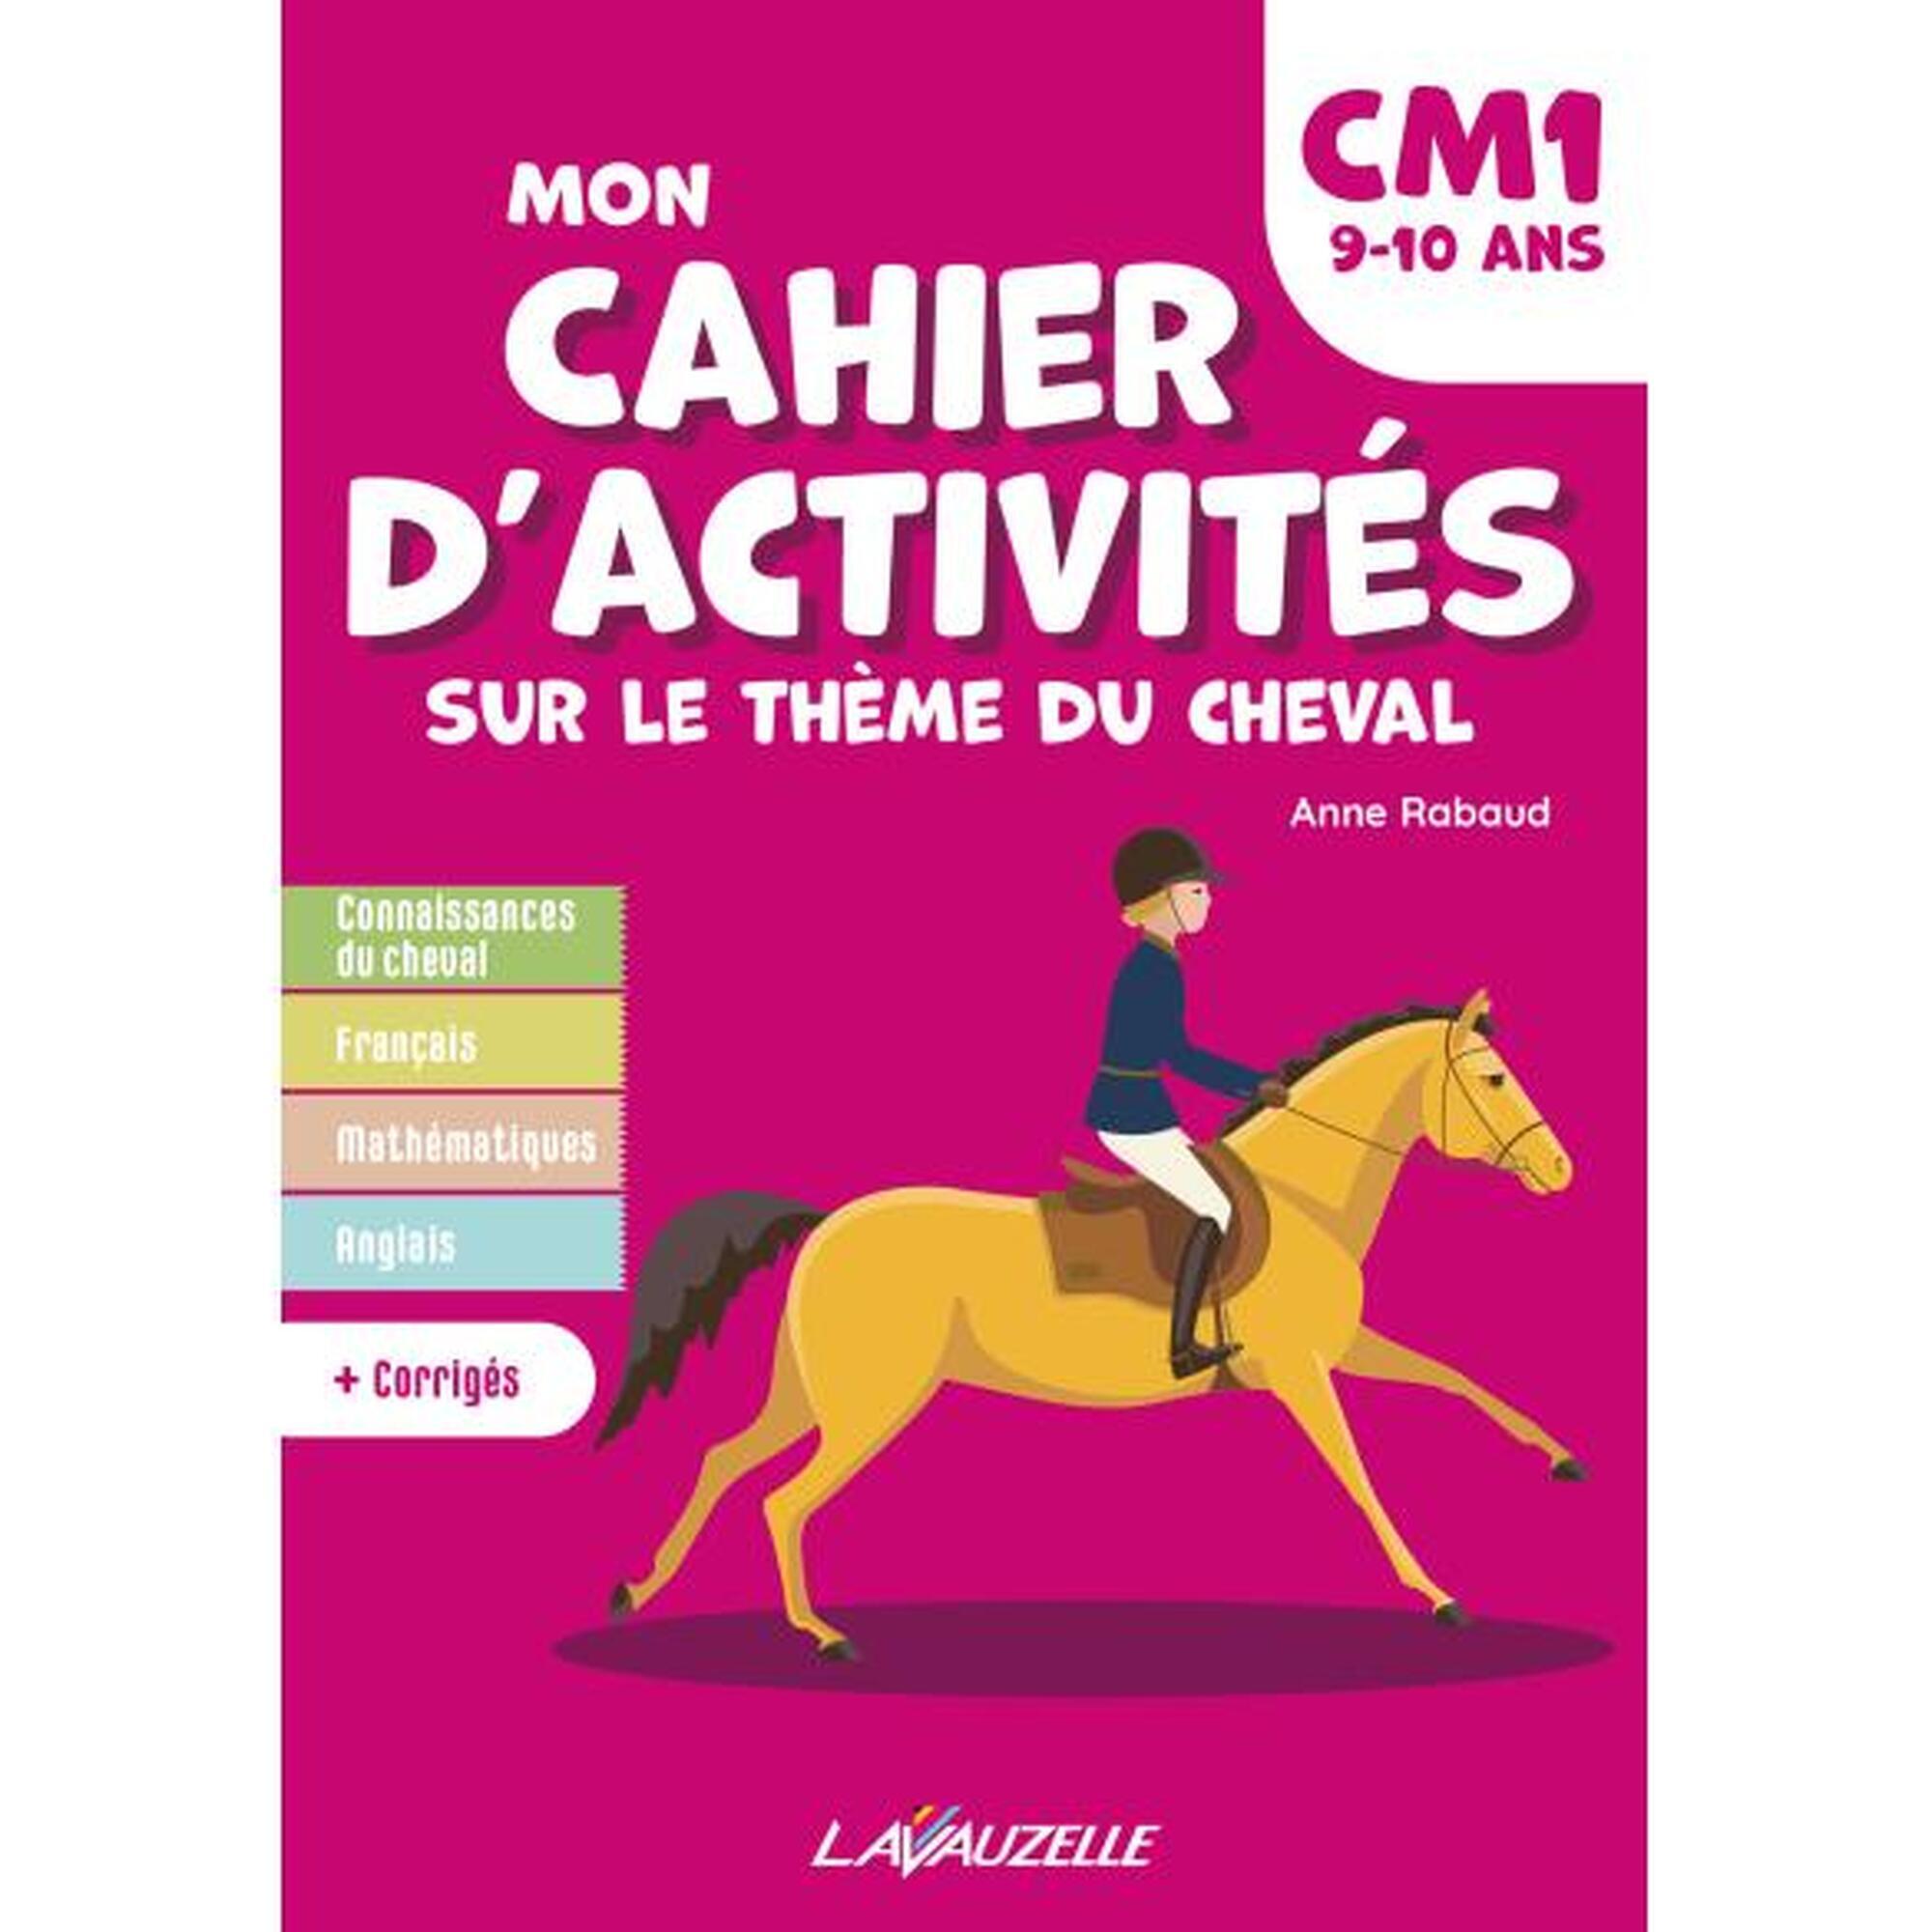 Mon cahier d'activités sur le thème du cheval - CM1